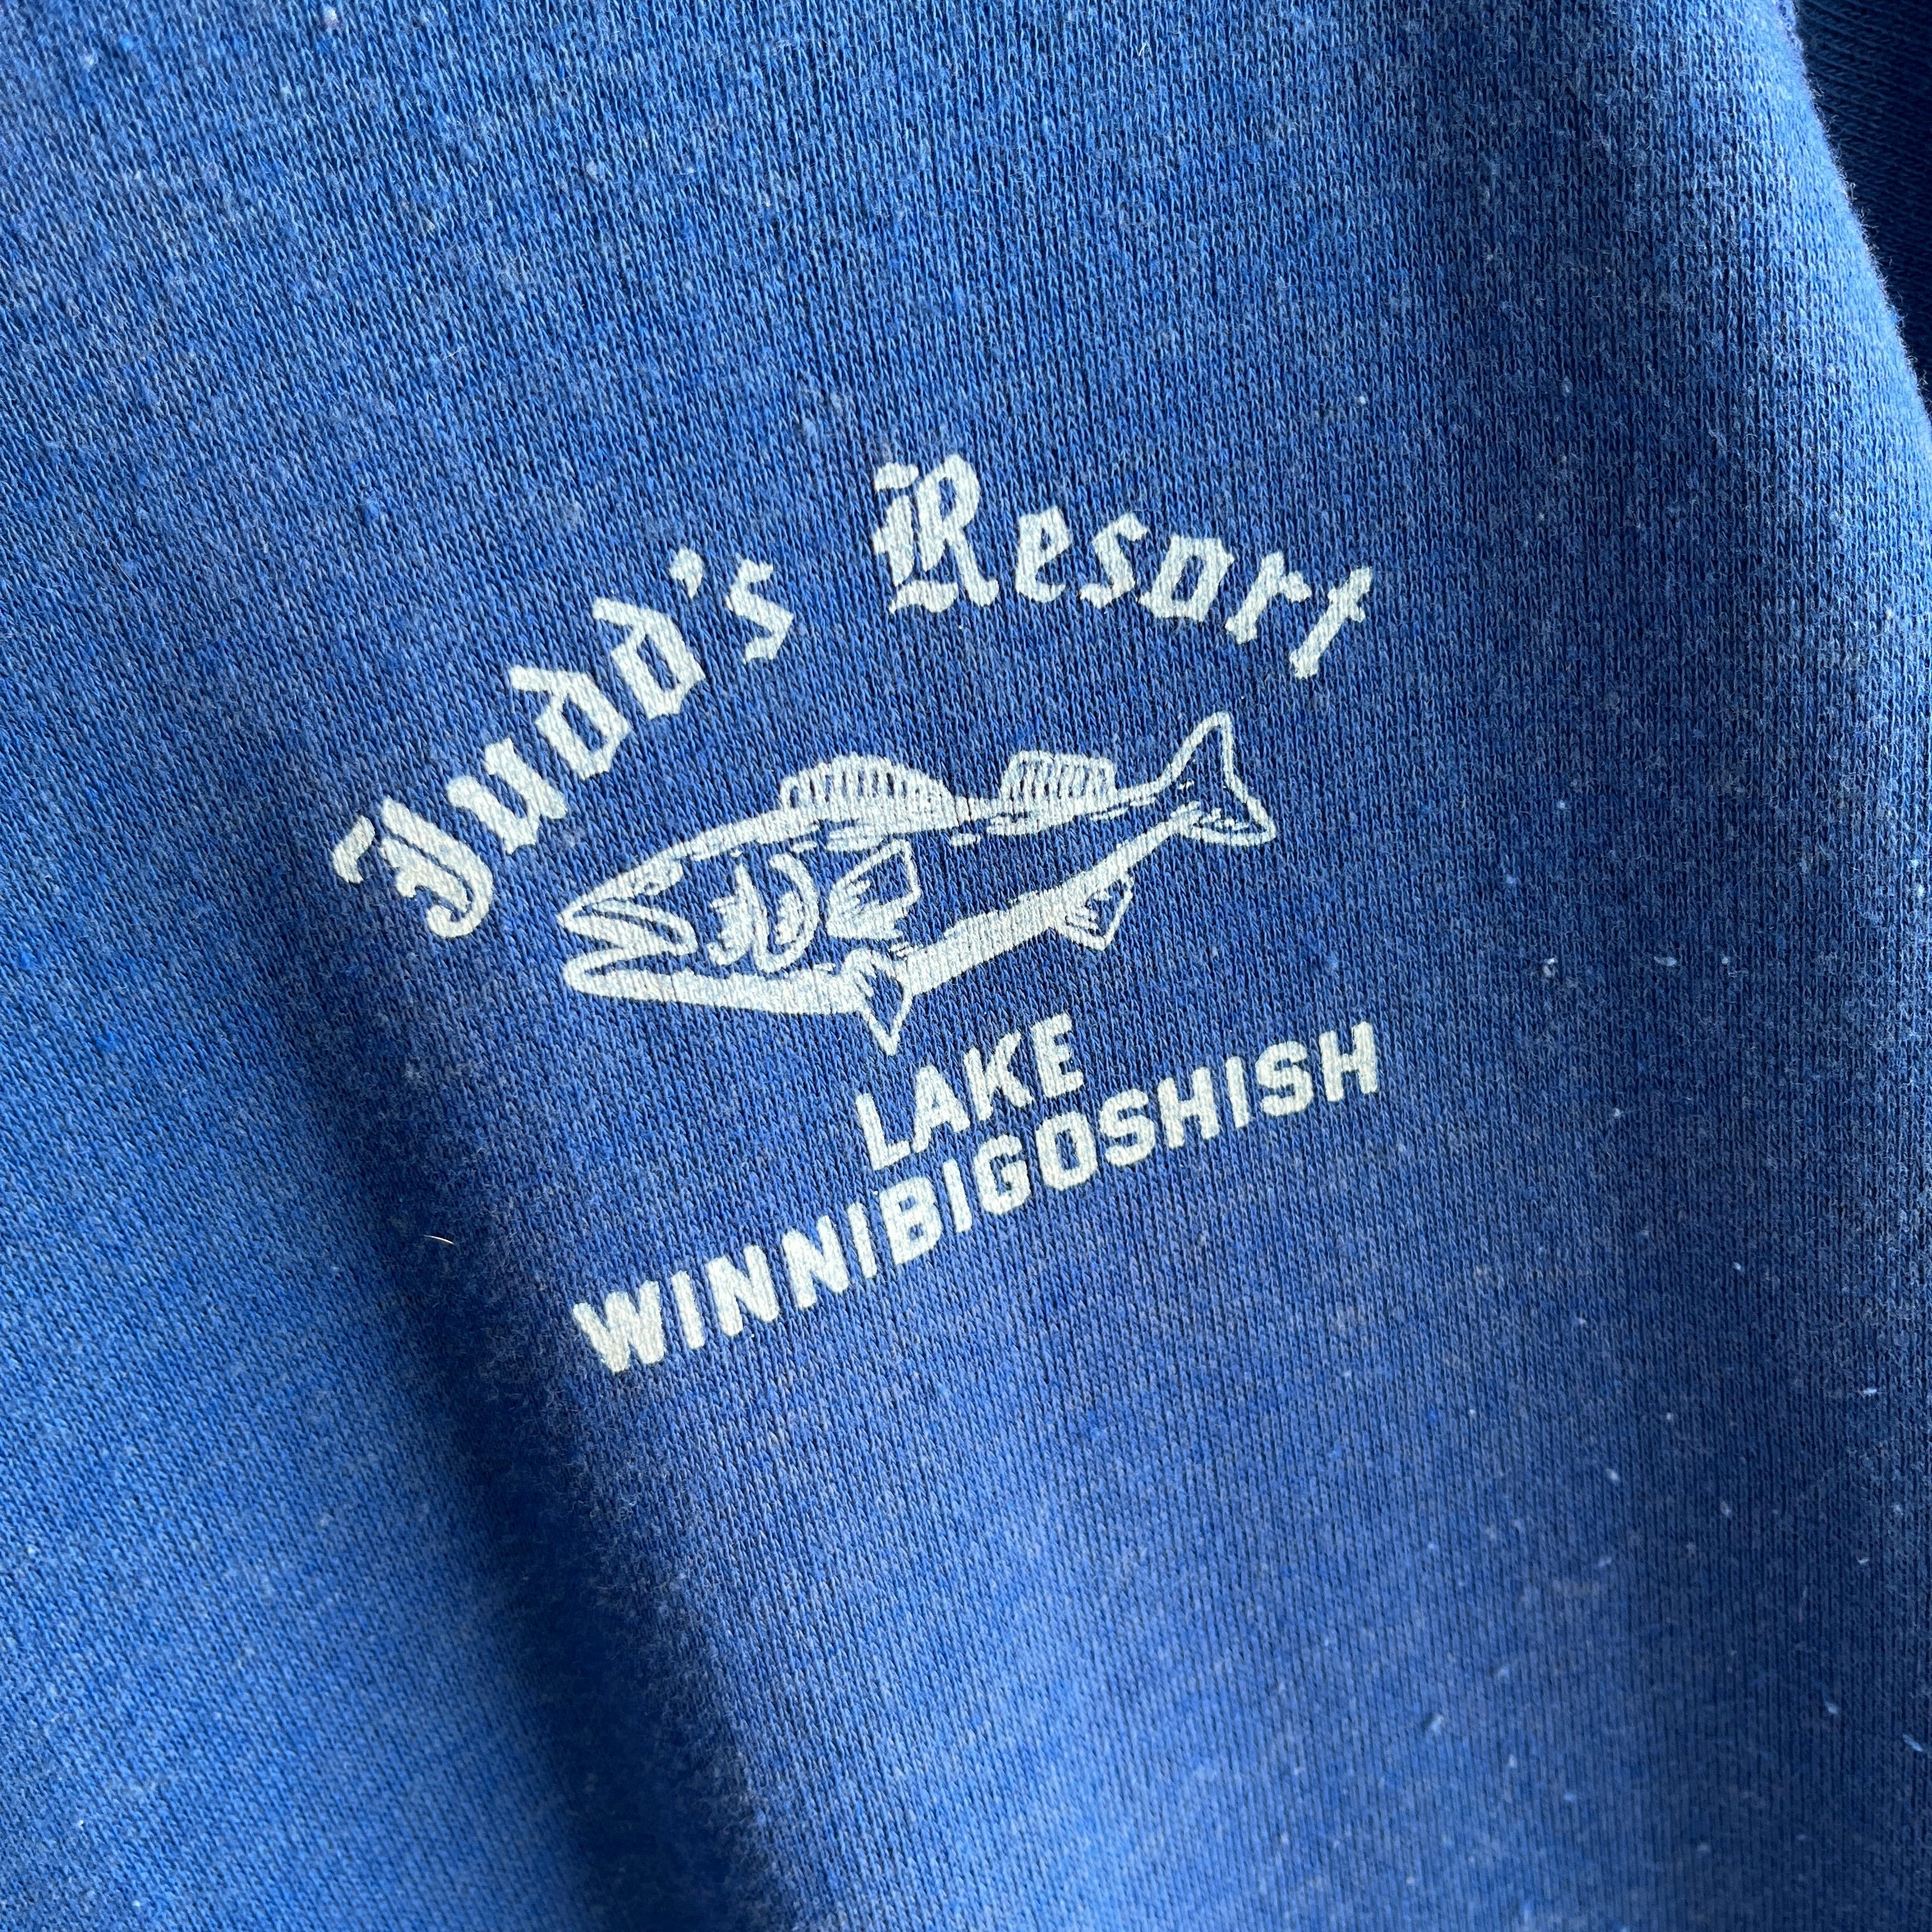 1980s Judd's Resort Lake Winnibigoshish Super Soft Sweatshirt